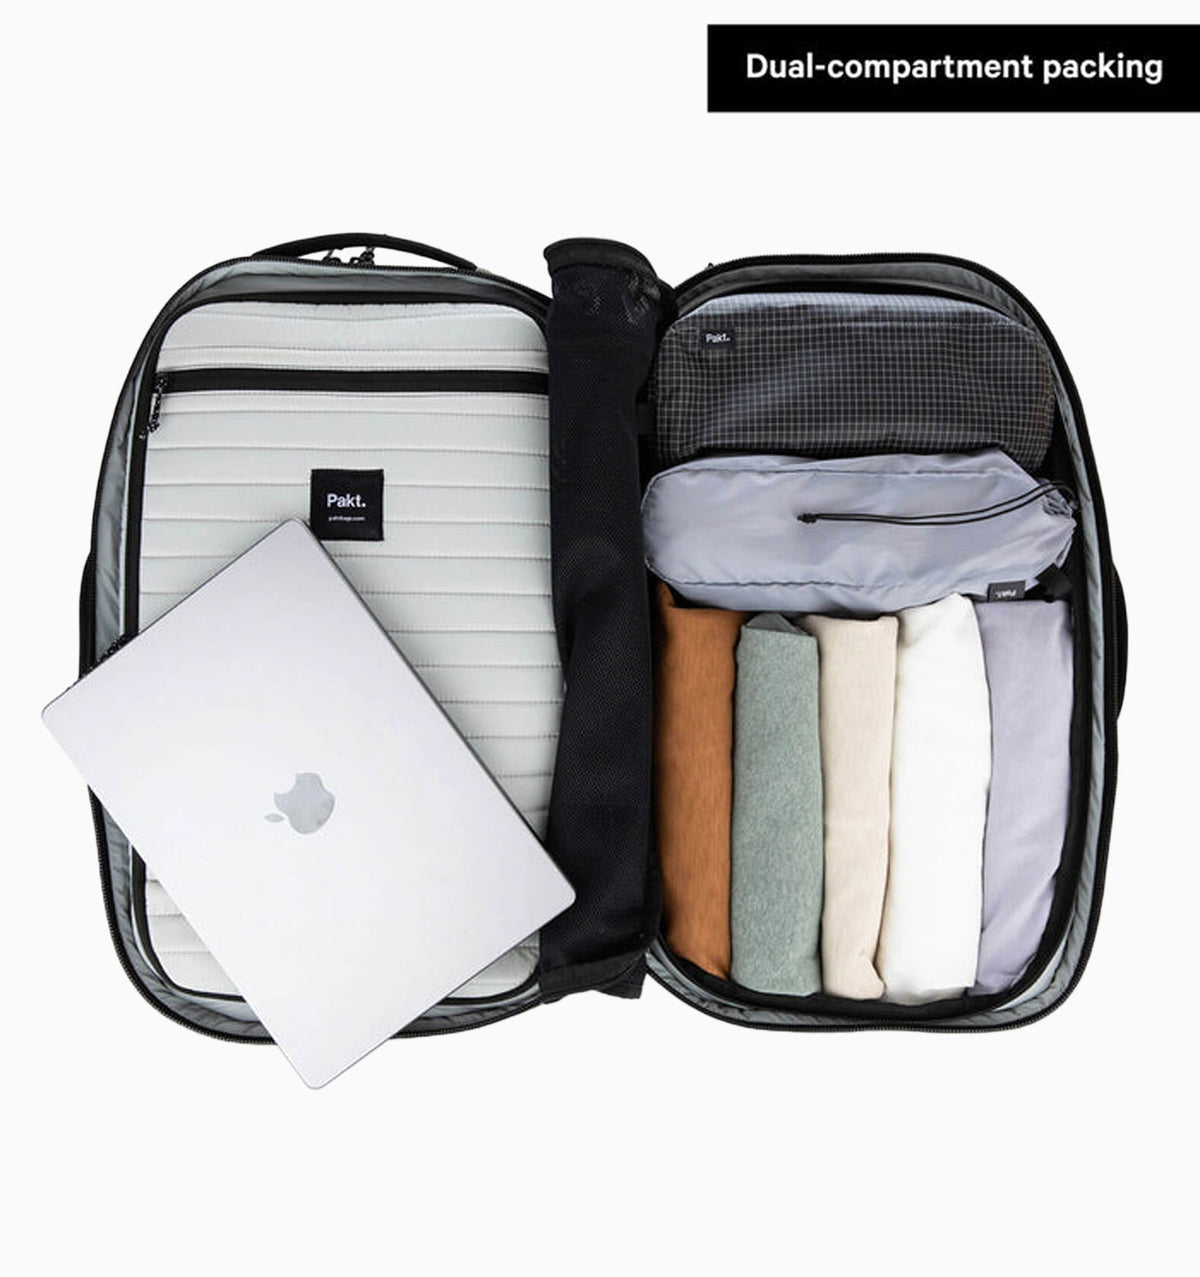 Pakt 16" Travel Backpack V2 45L - Black